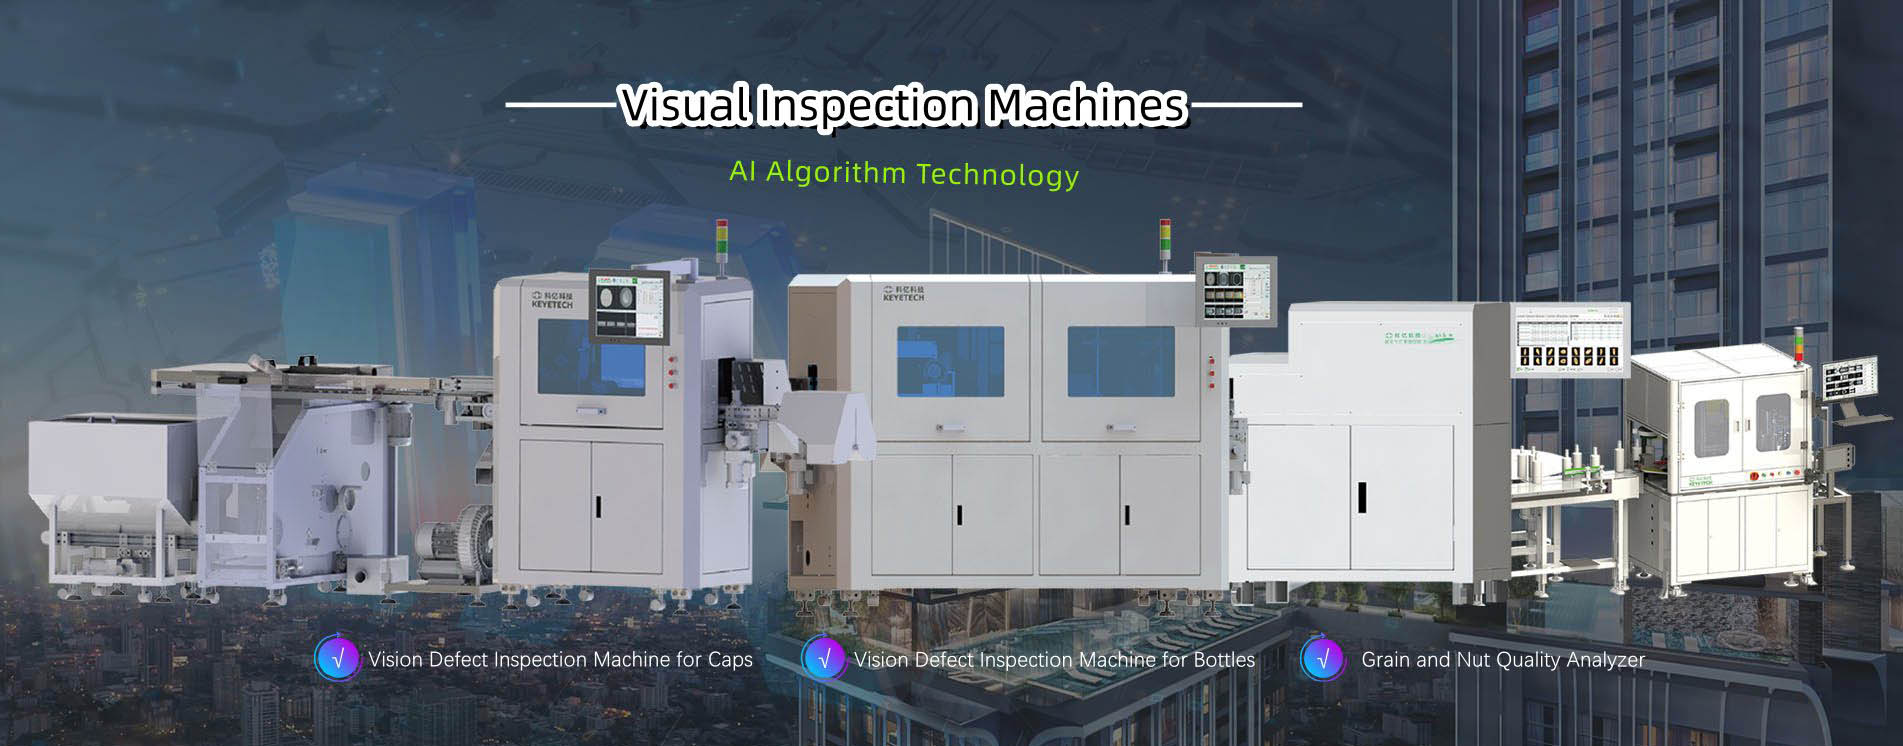 Máquinas de inspección visual